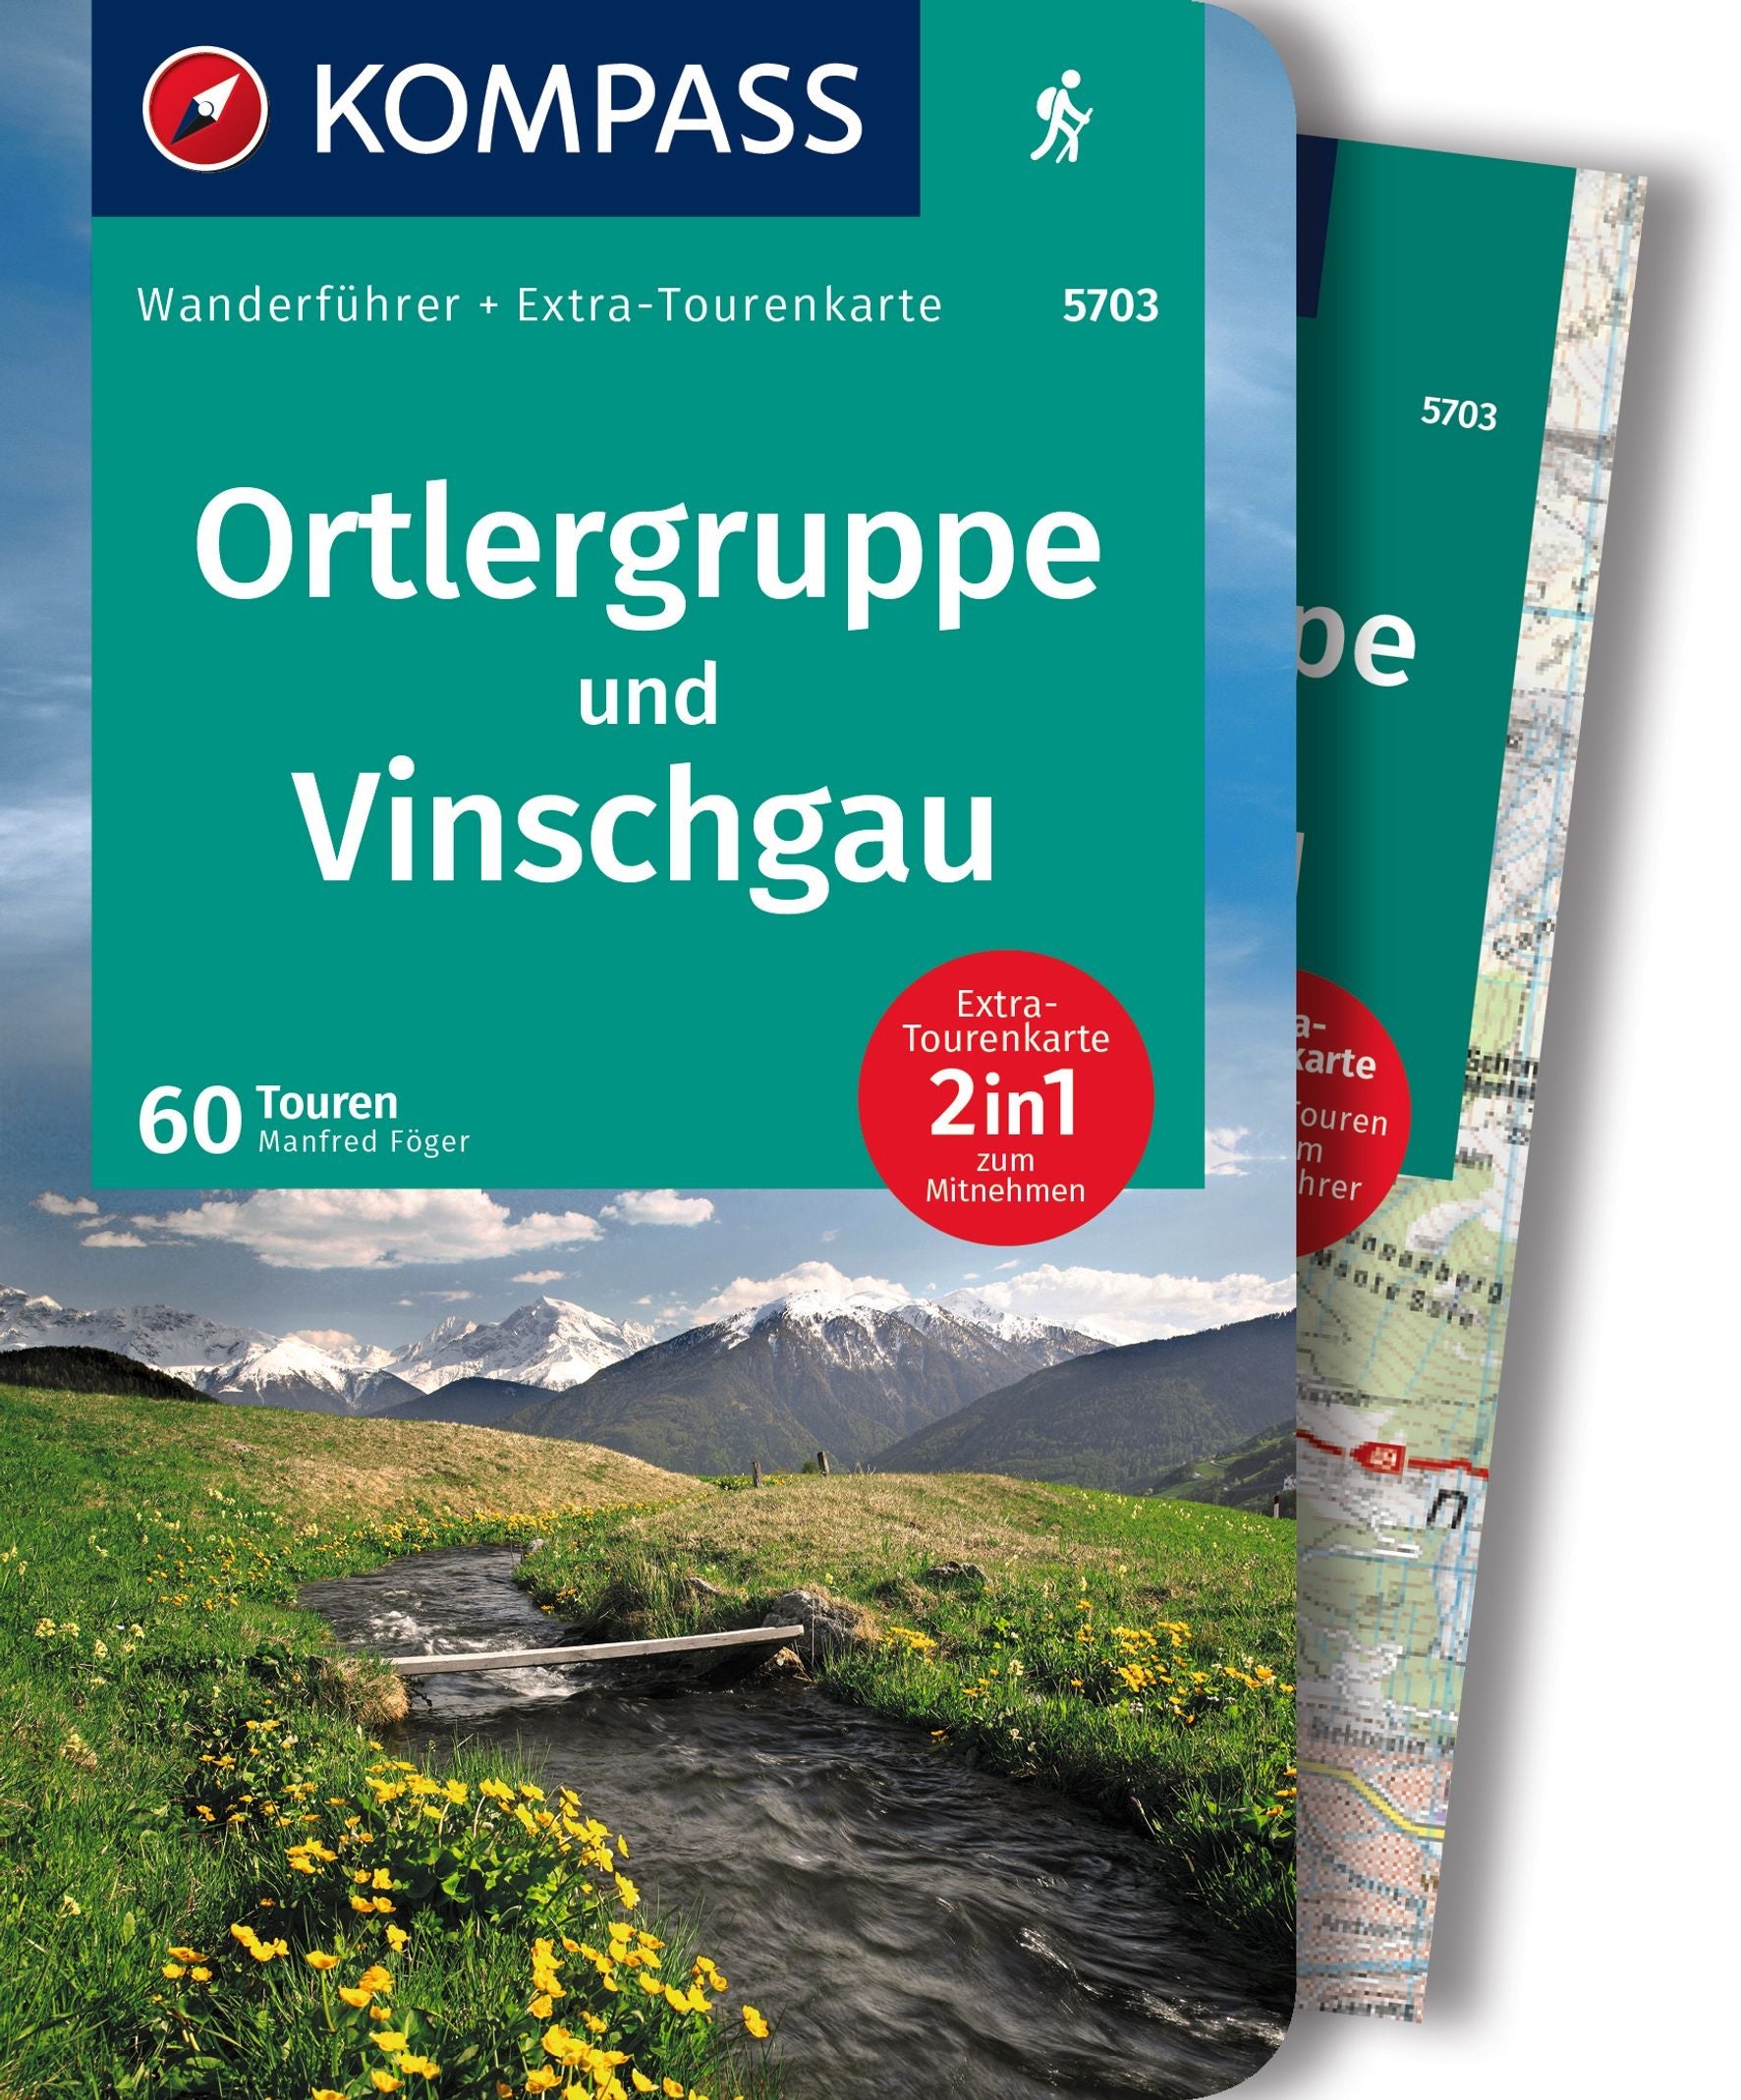 Ortlergruppe und Vinschgau - Kompass Wanderführer